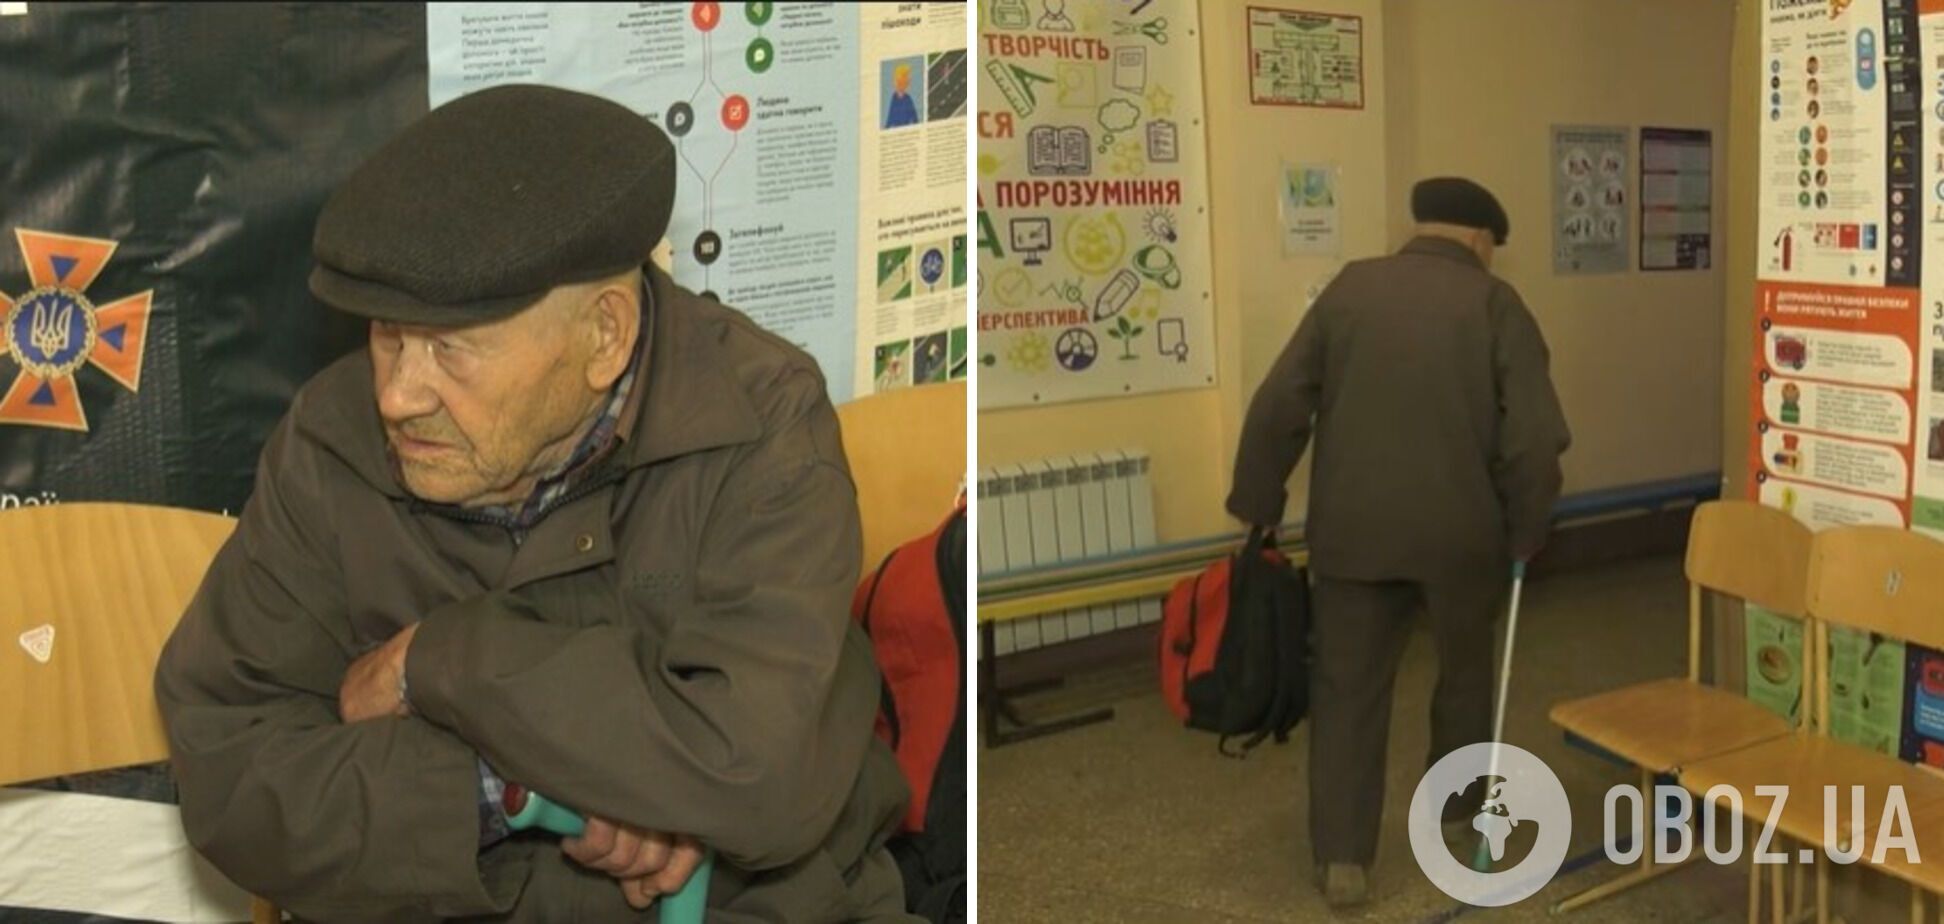 'Поражающая история': 88-летний дедушка вышел из оккупированной части Очеретино, чтобы не получать гражданство России. Видео